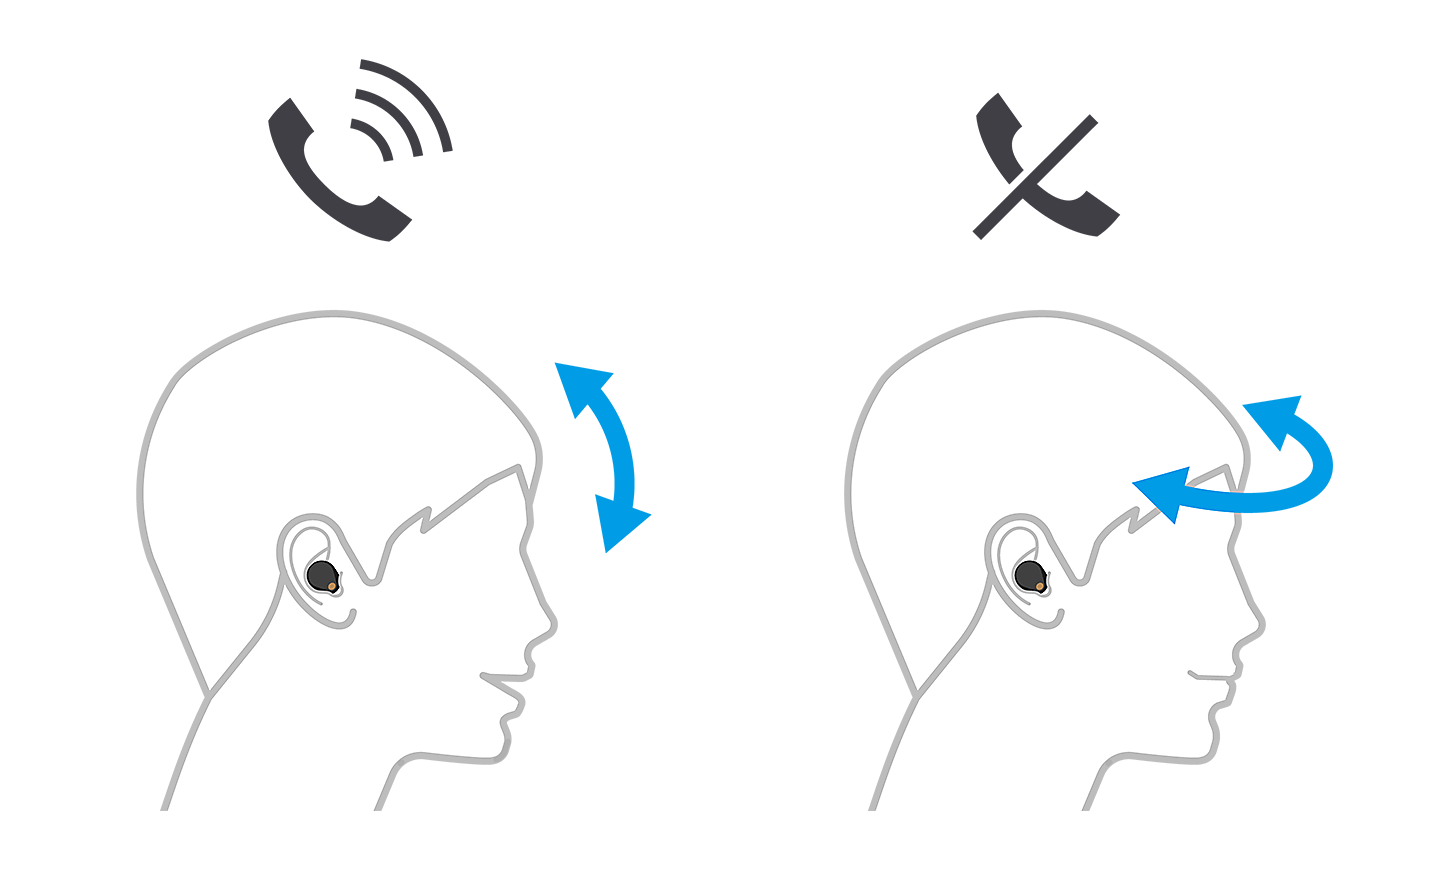 Slika dviju glava, lijeva prihvaća poziv sa strelicama prema gore i dolje, a desna odbija sa strelicama prema lijevo i desno